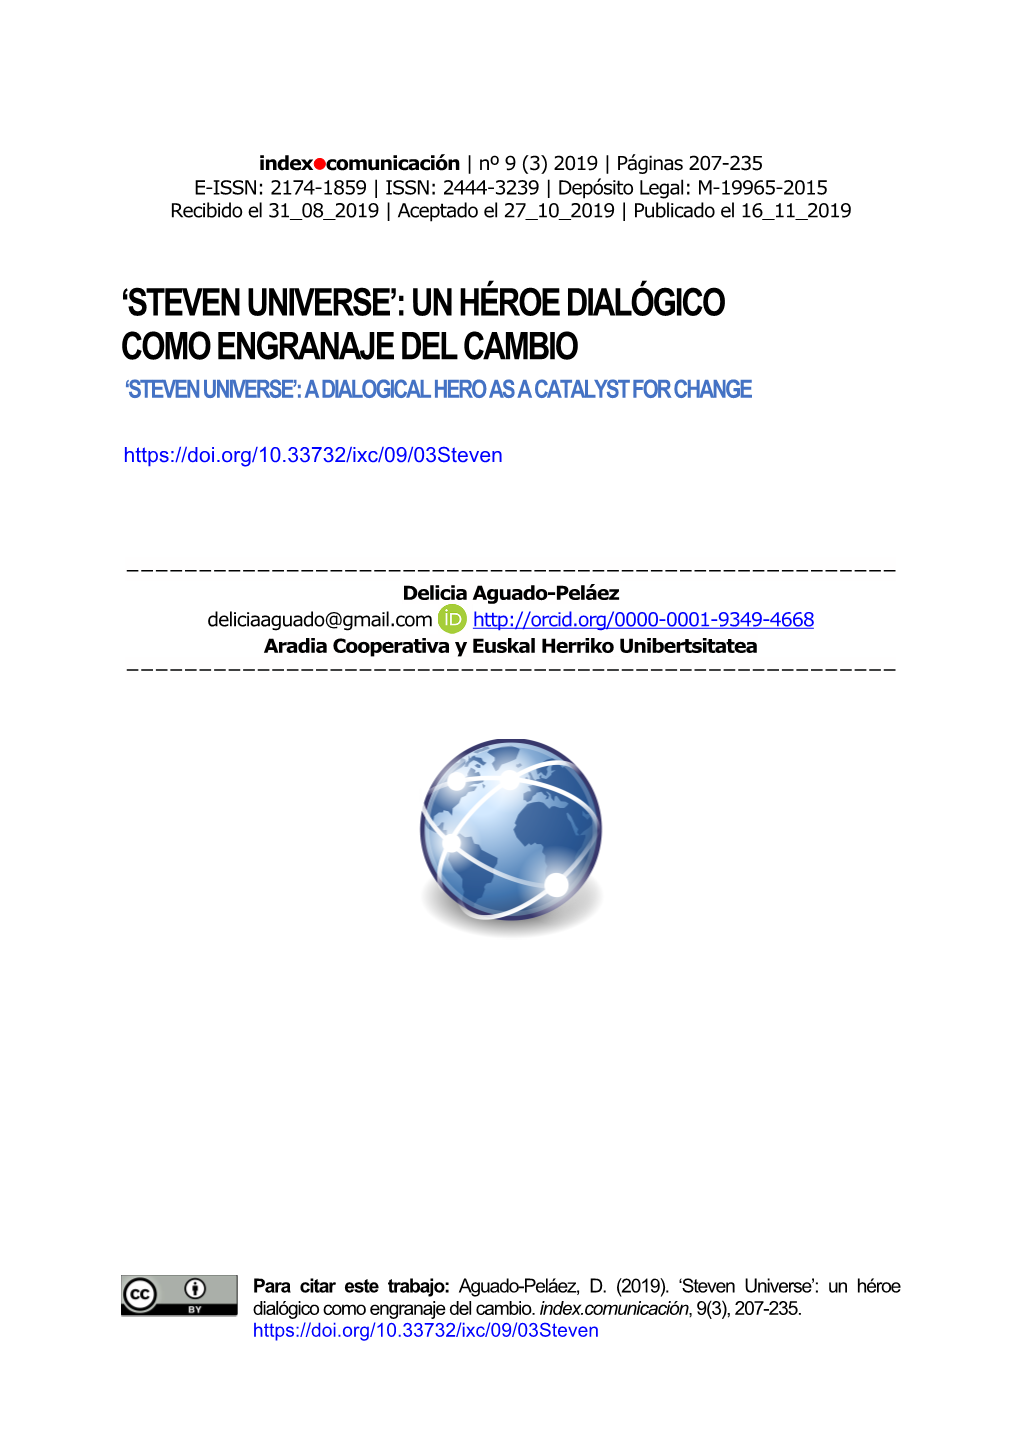 Steven Universe’: Un Héroe Dialógico Como Engranaje Del Cambio ‘Steven Universe’: a Dialogical Hero As a Catalyst for Change